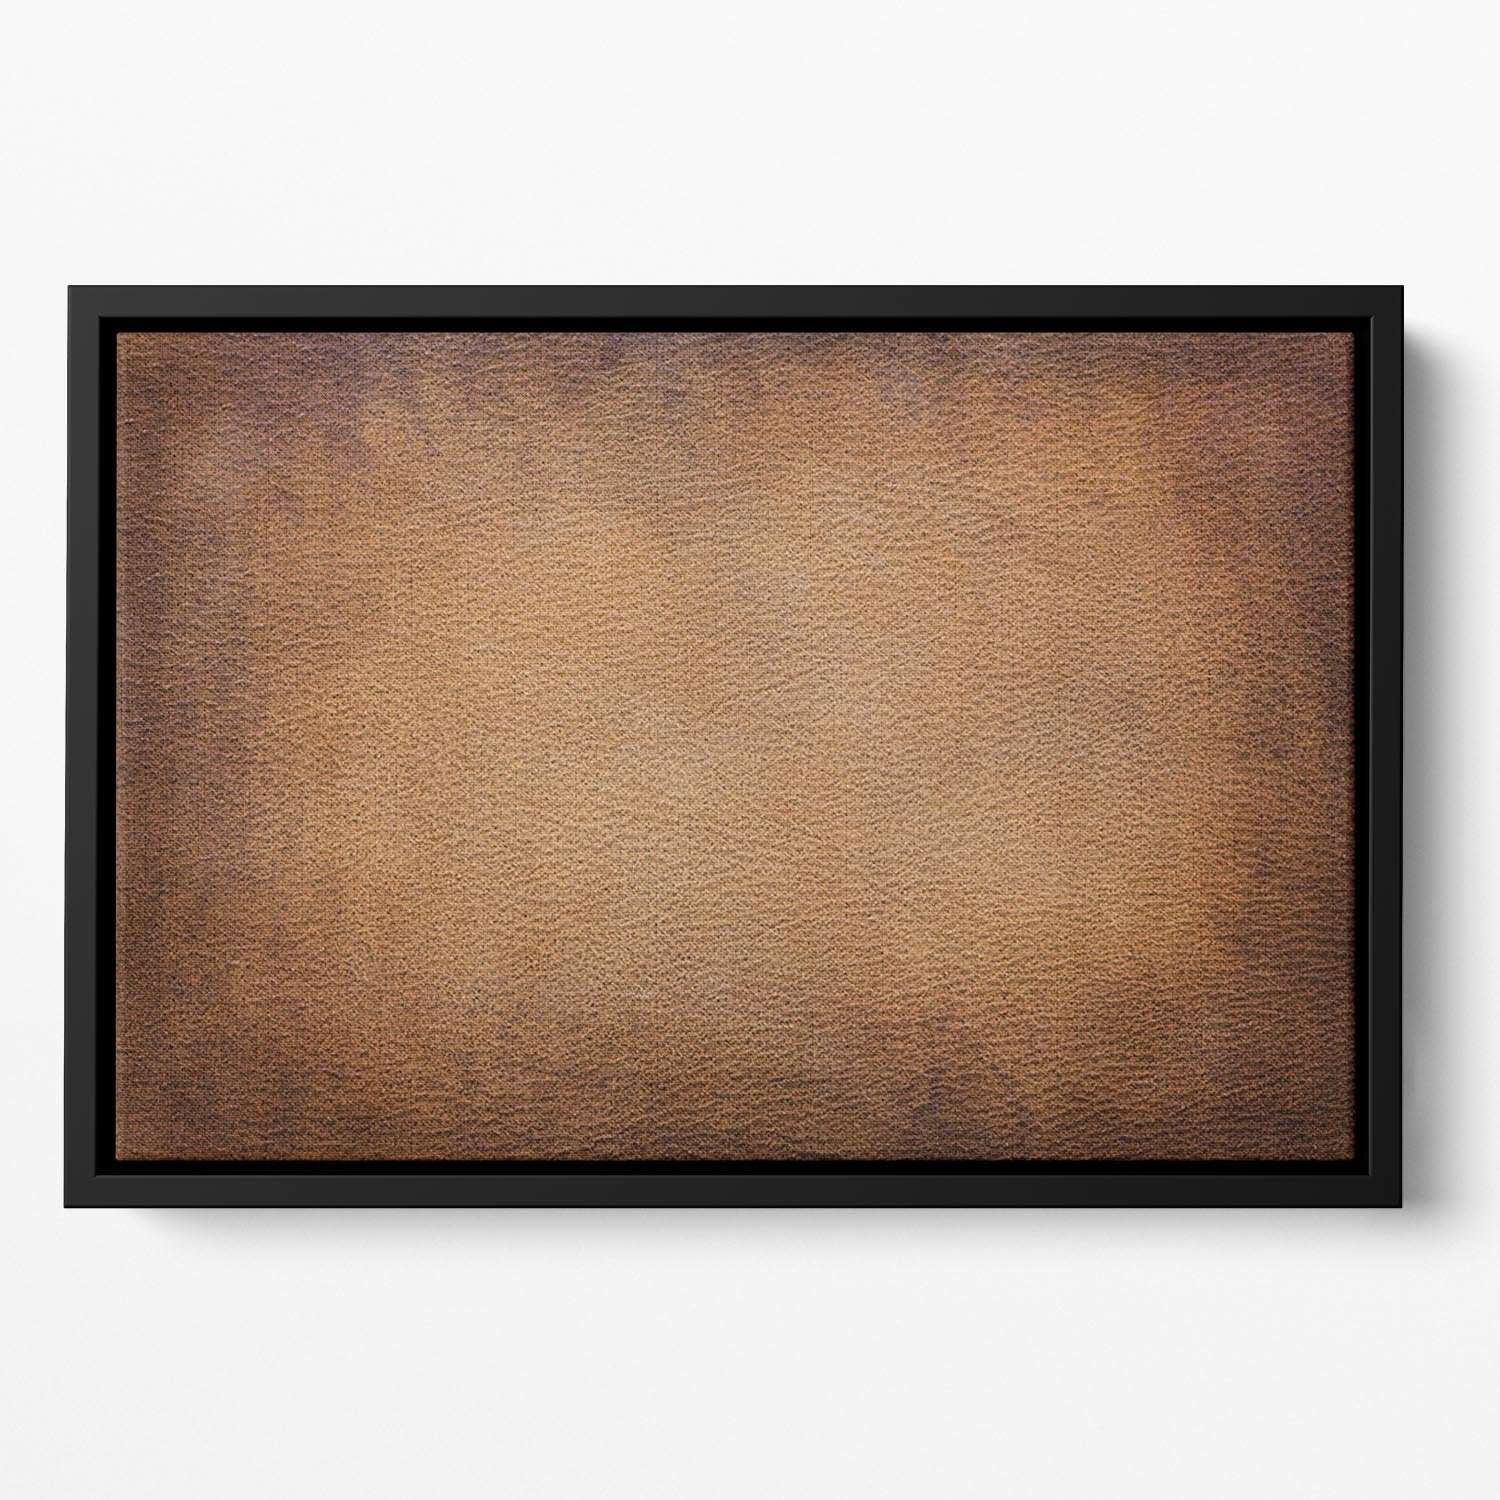 Old vintage brown leather Floating Framed Canvas - Canvas Art Rocks - 2